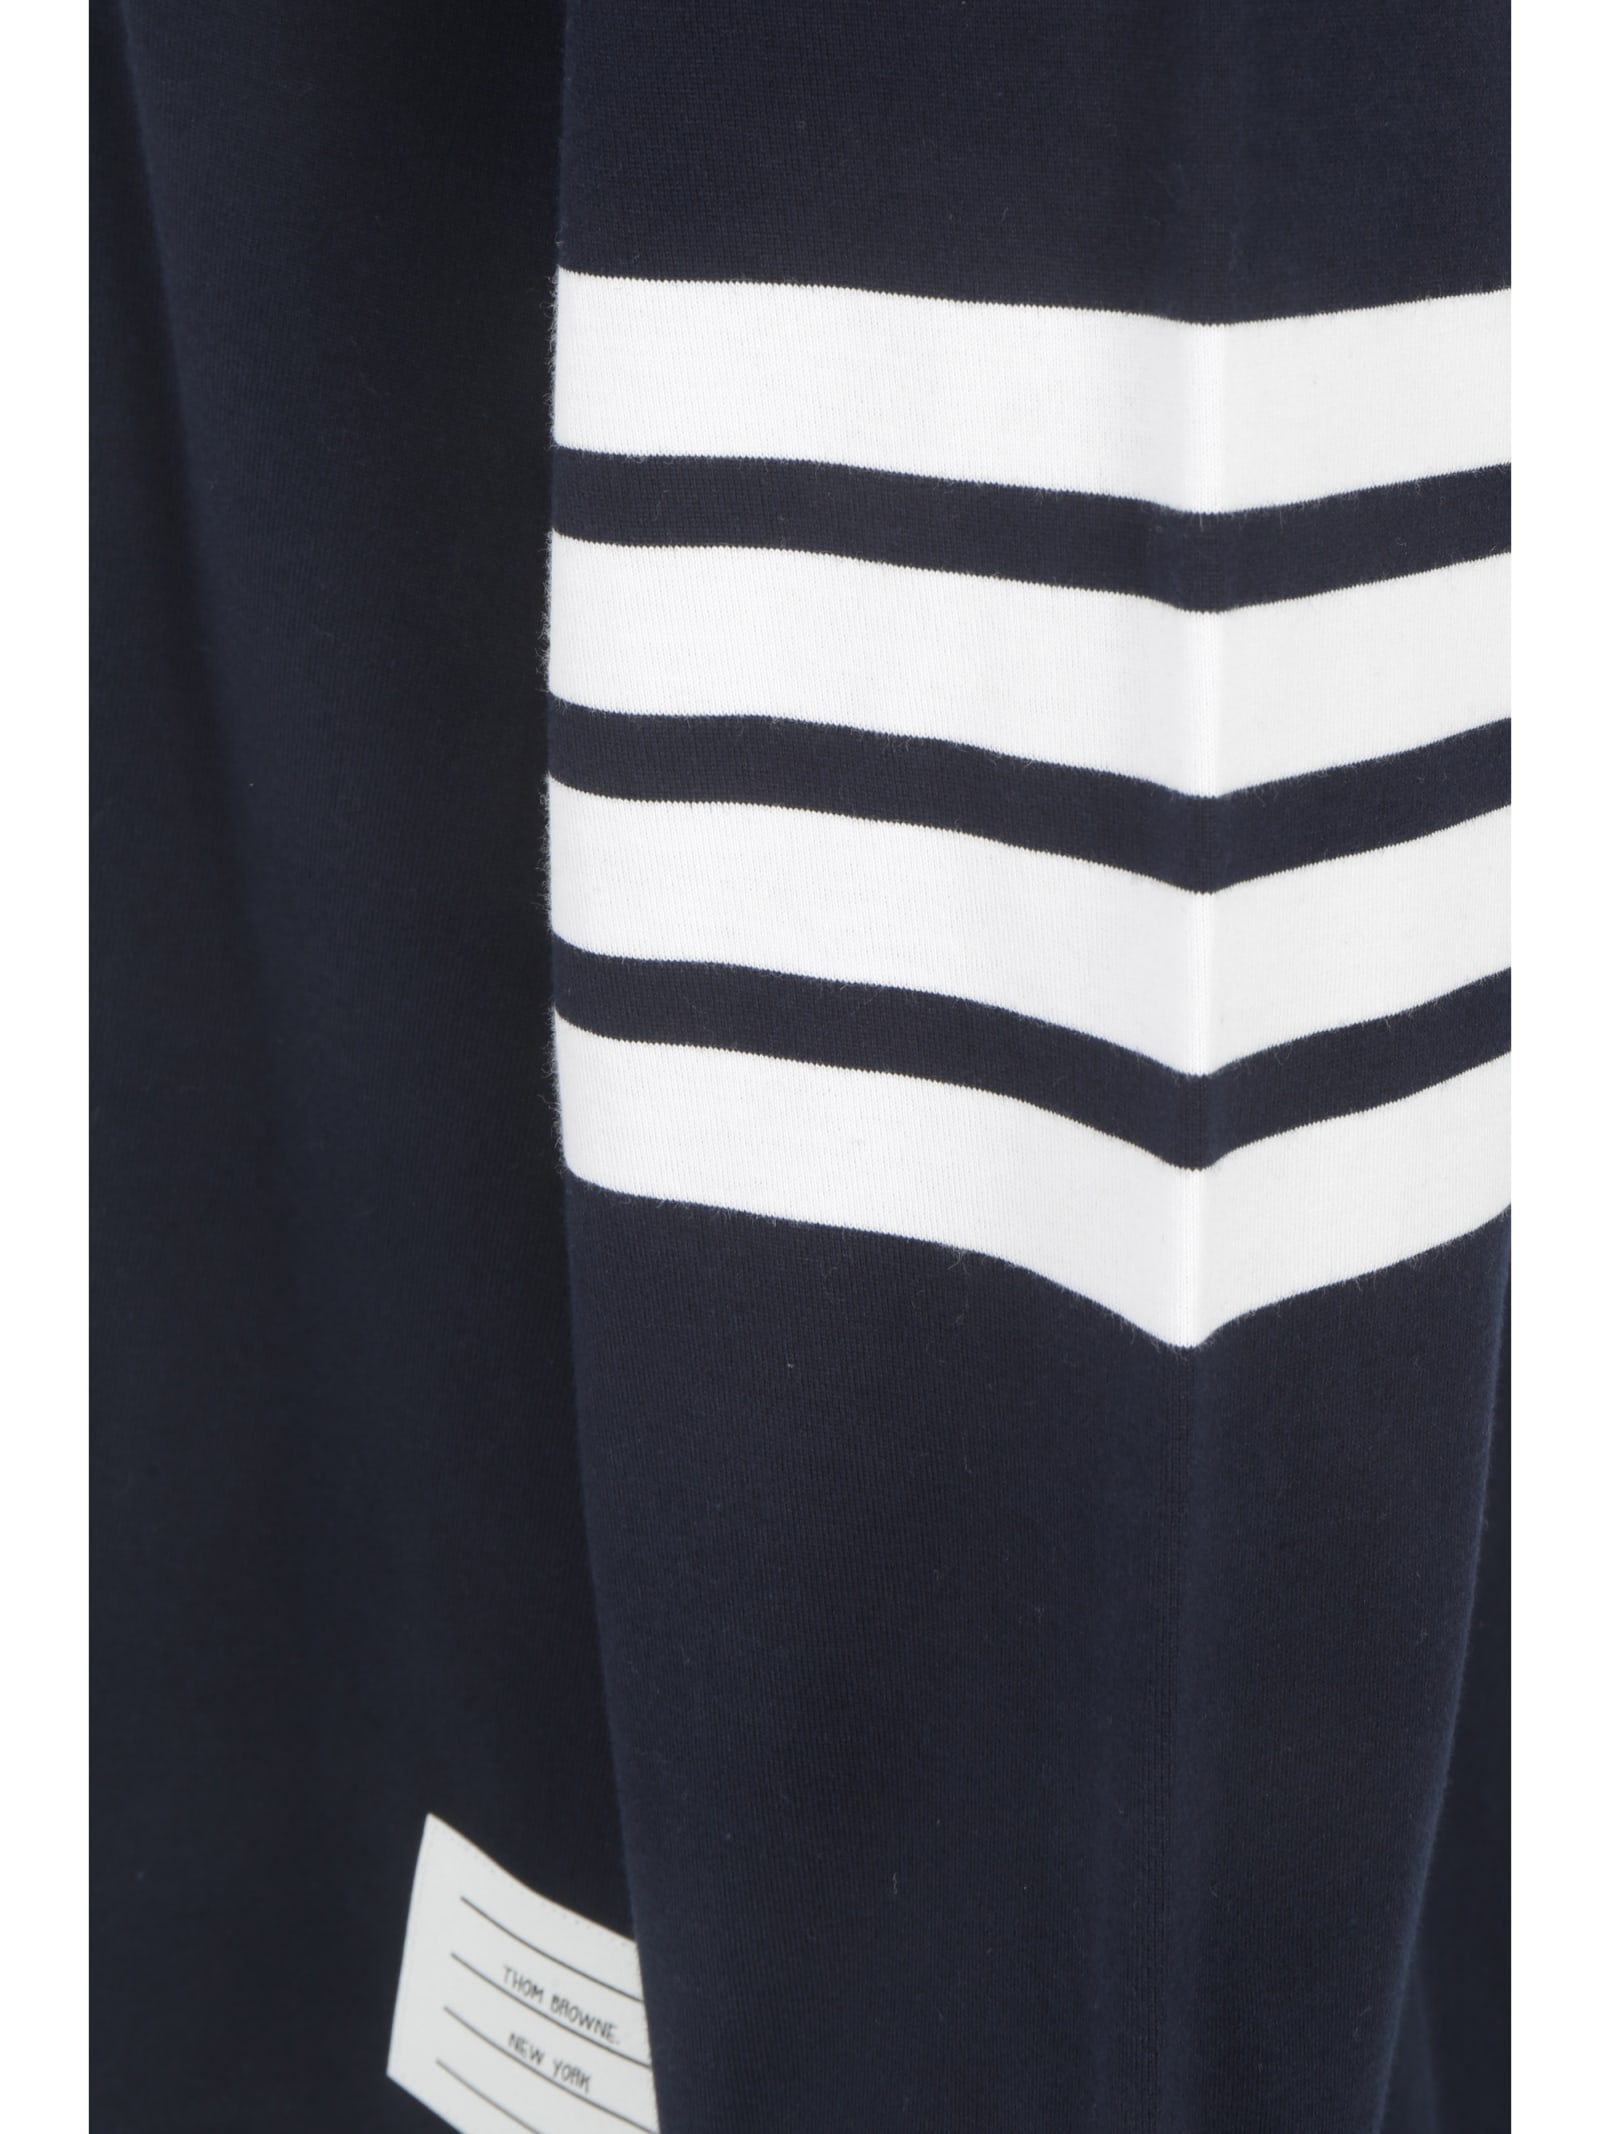 Shop Thom Browne Sweatshirt In Navy